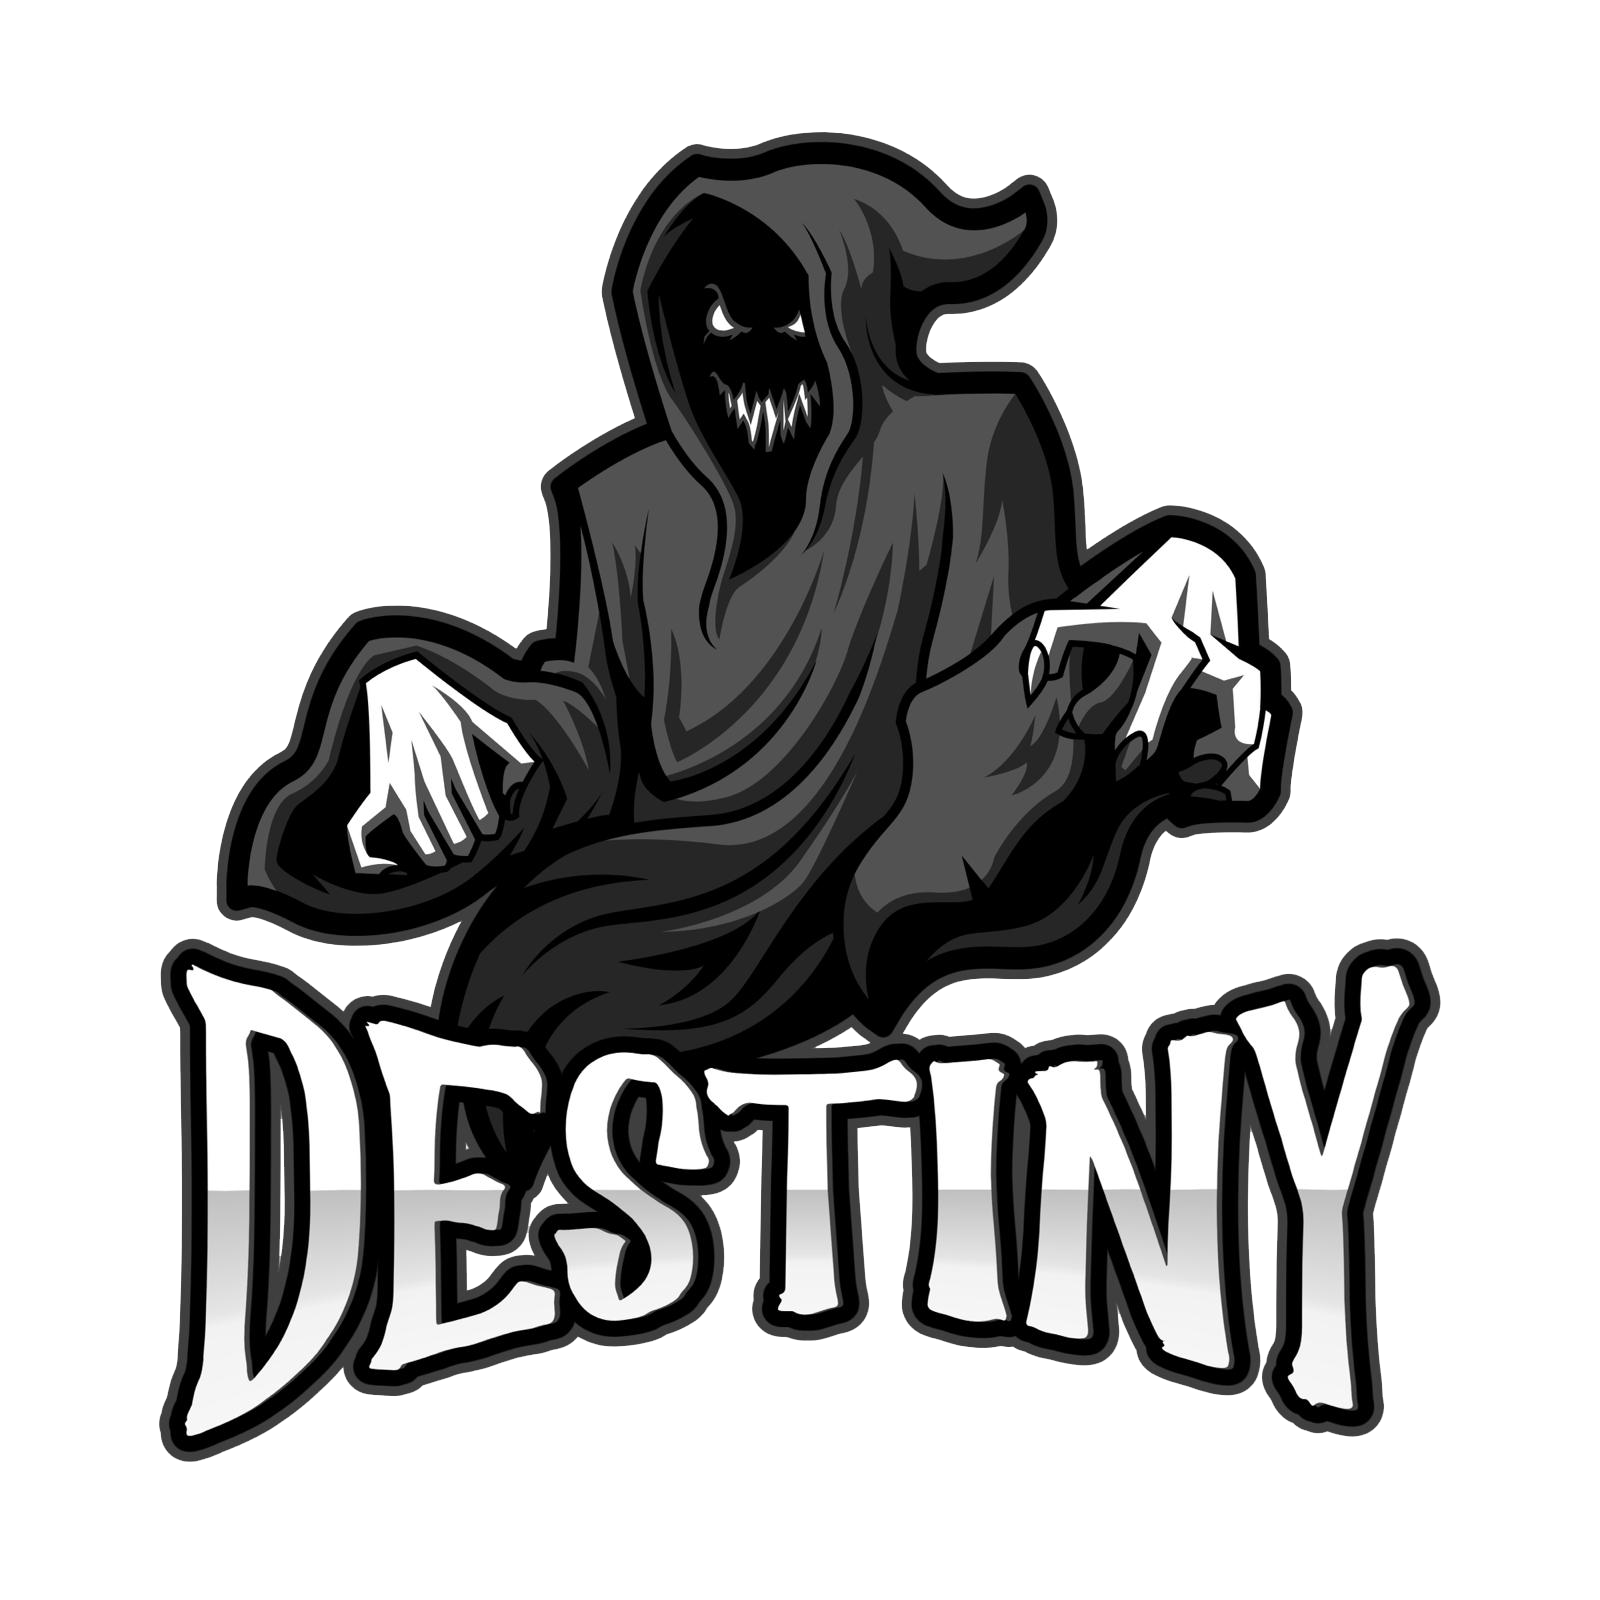 Destiny (DSQ)